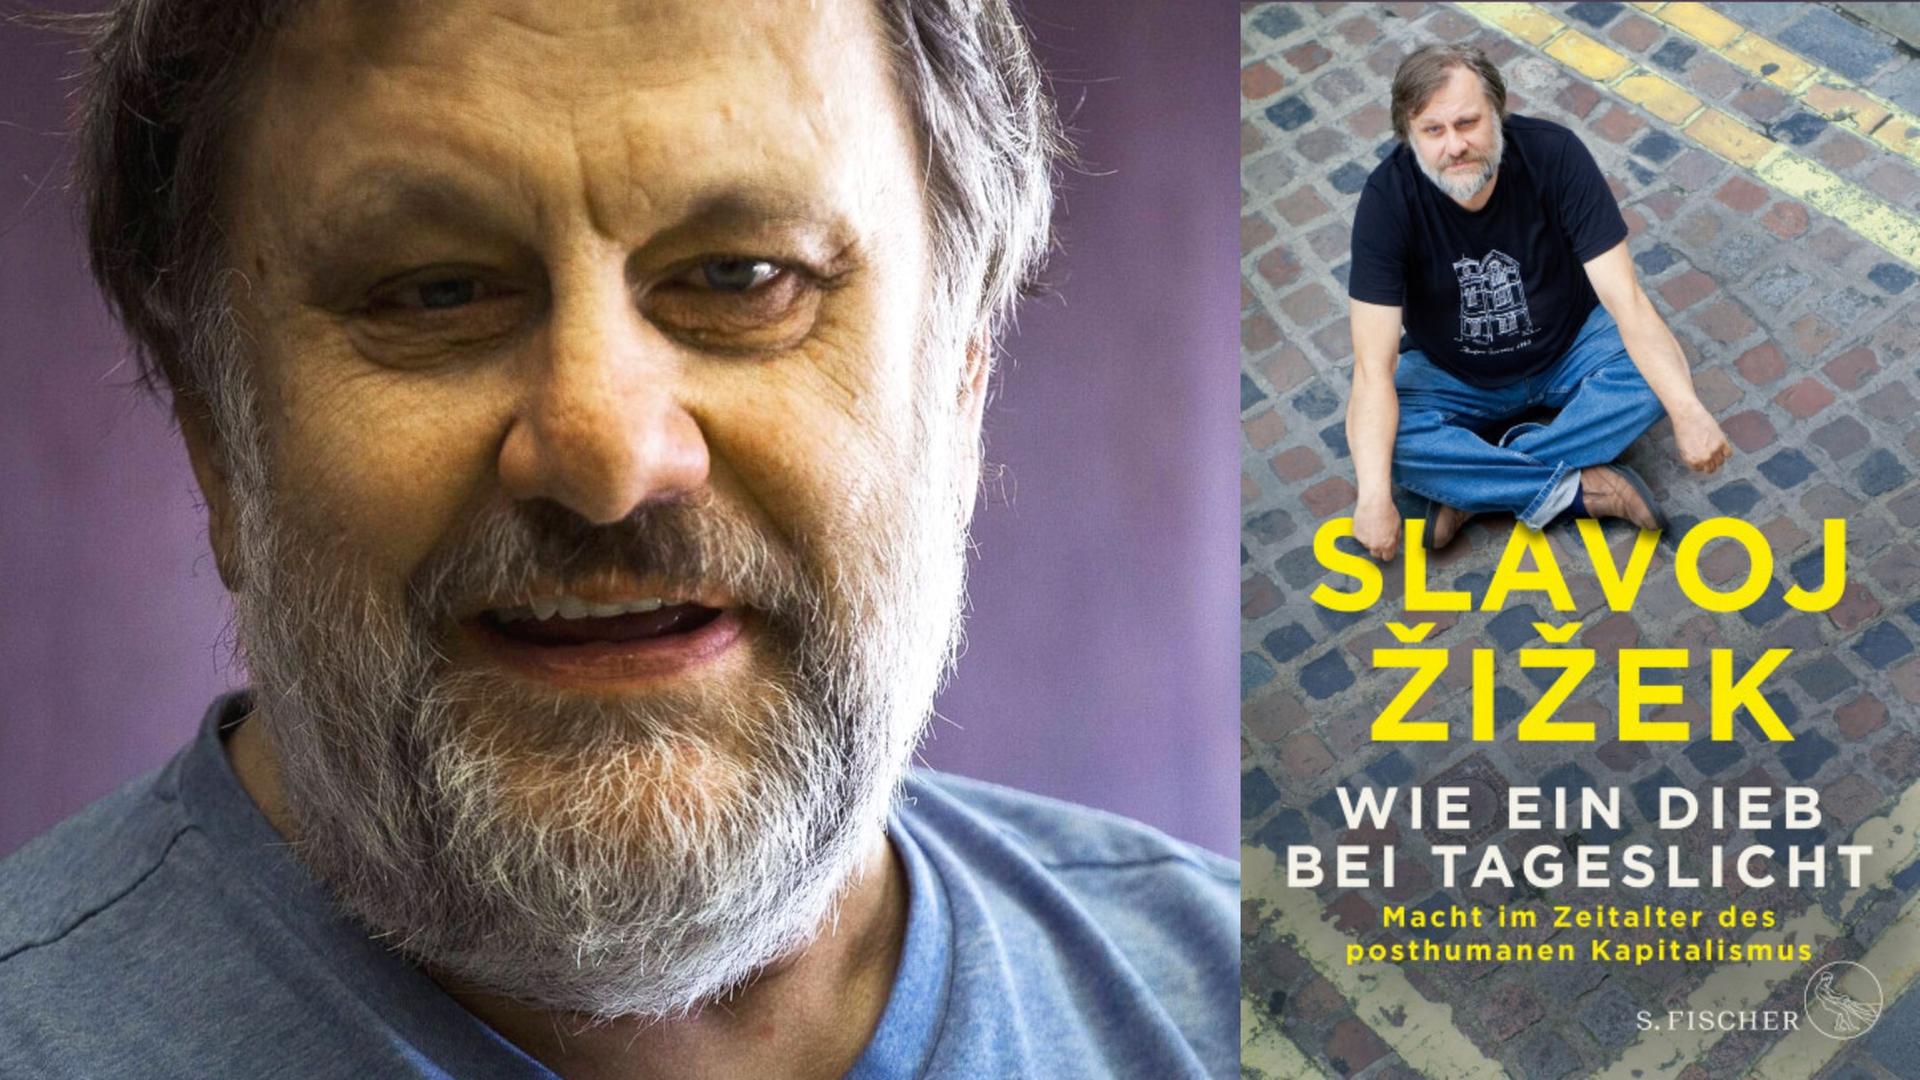 Zu sehen ist der Autor Slavoj Žižek und sein Buch "Wie ein Dieb bei Tageslicht"